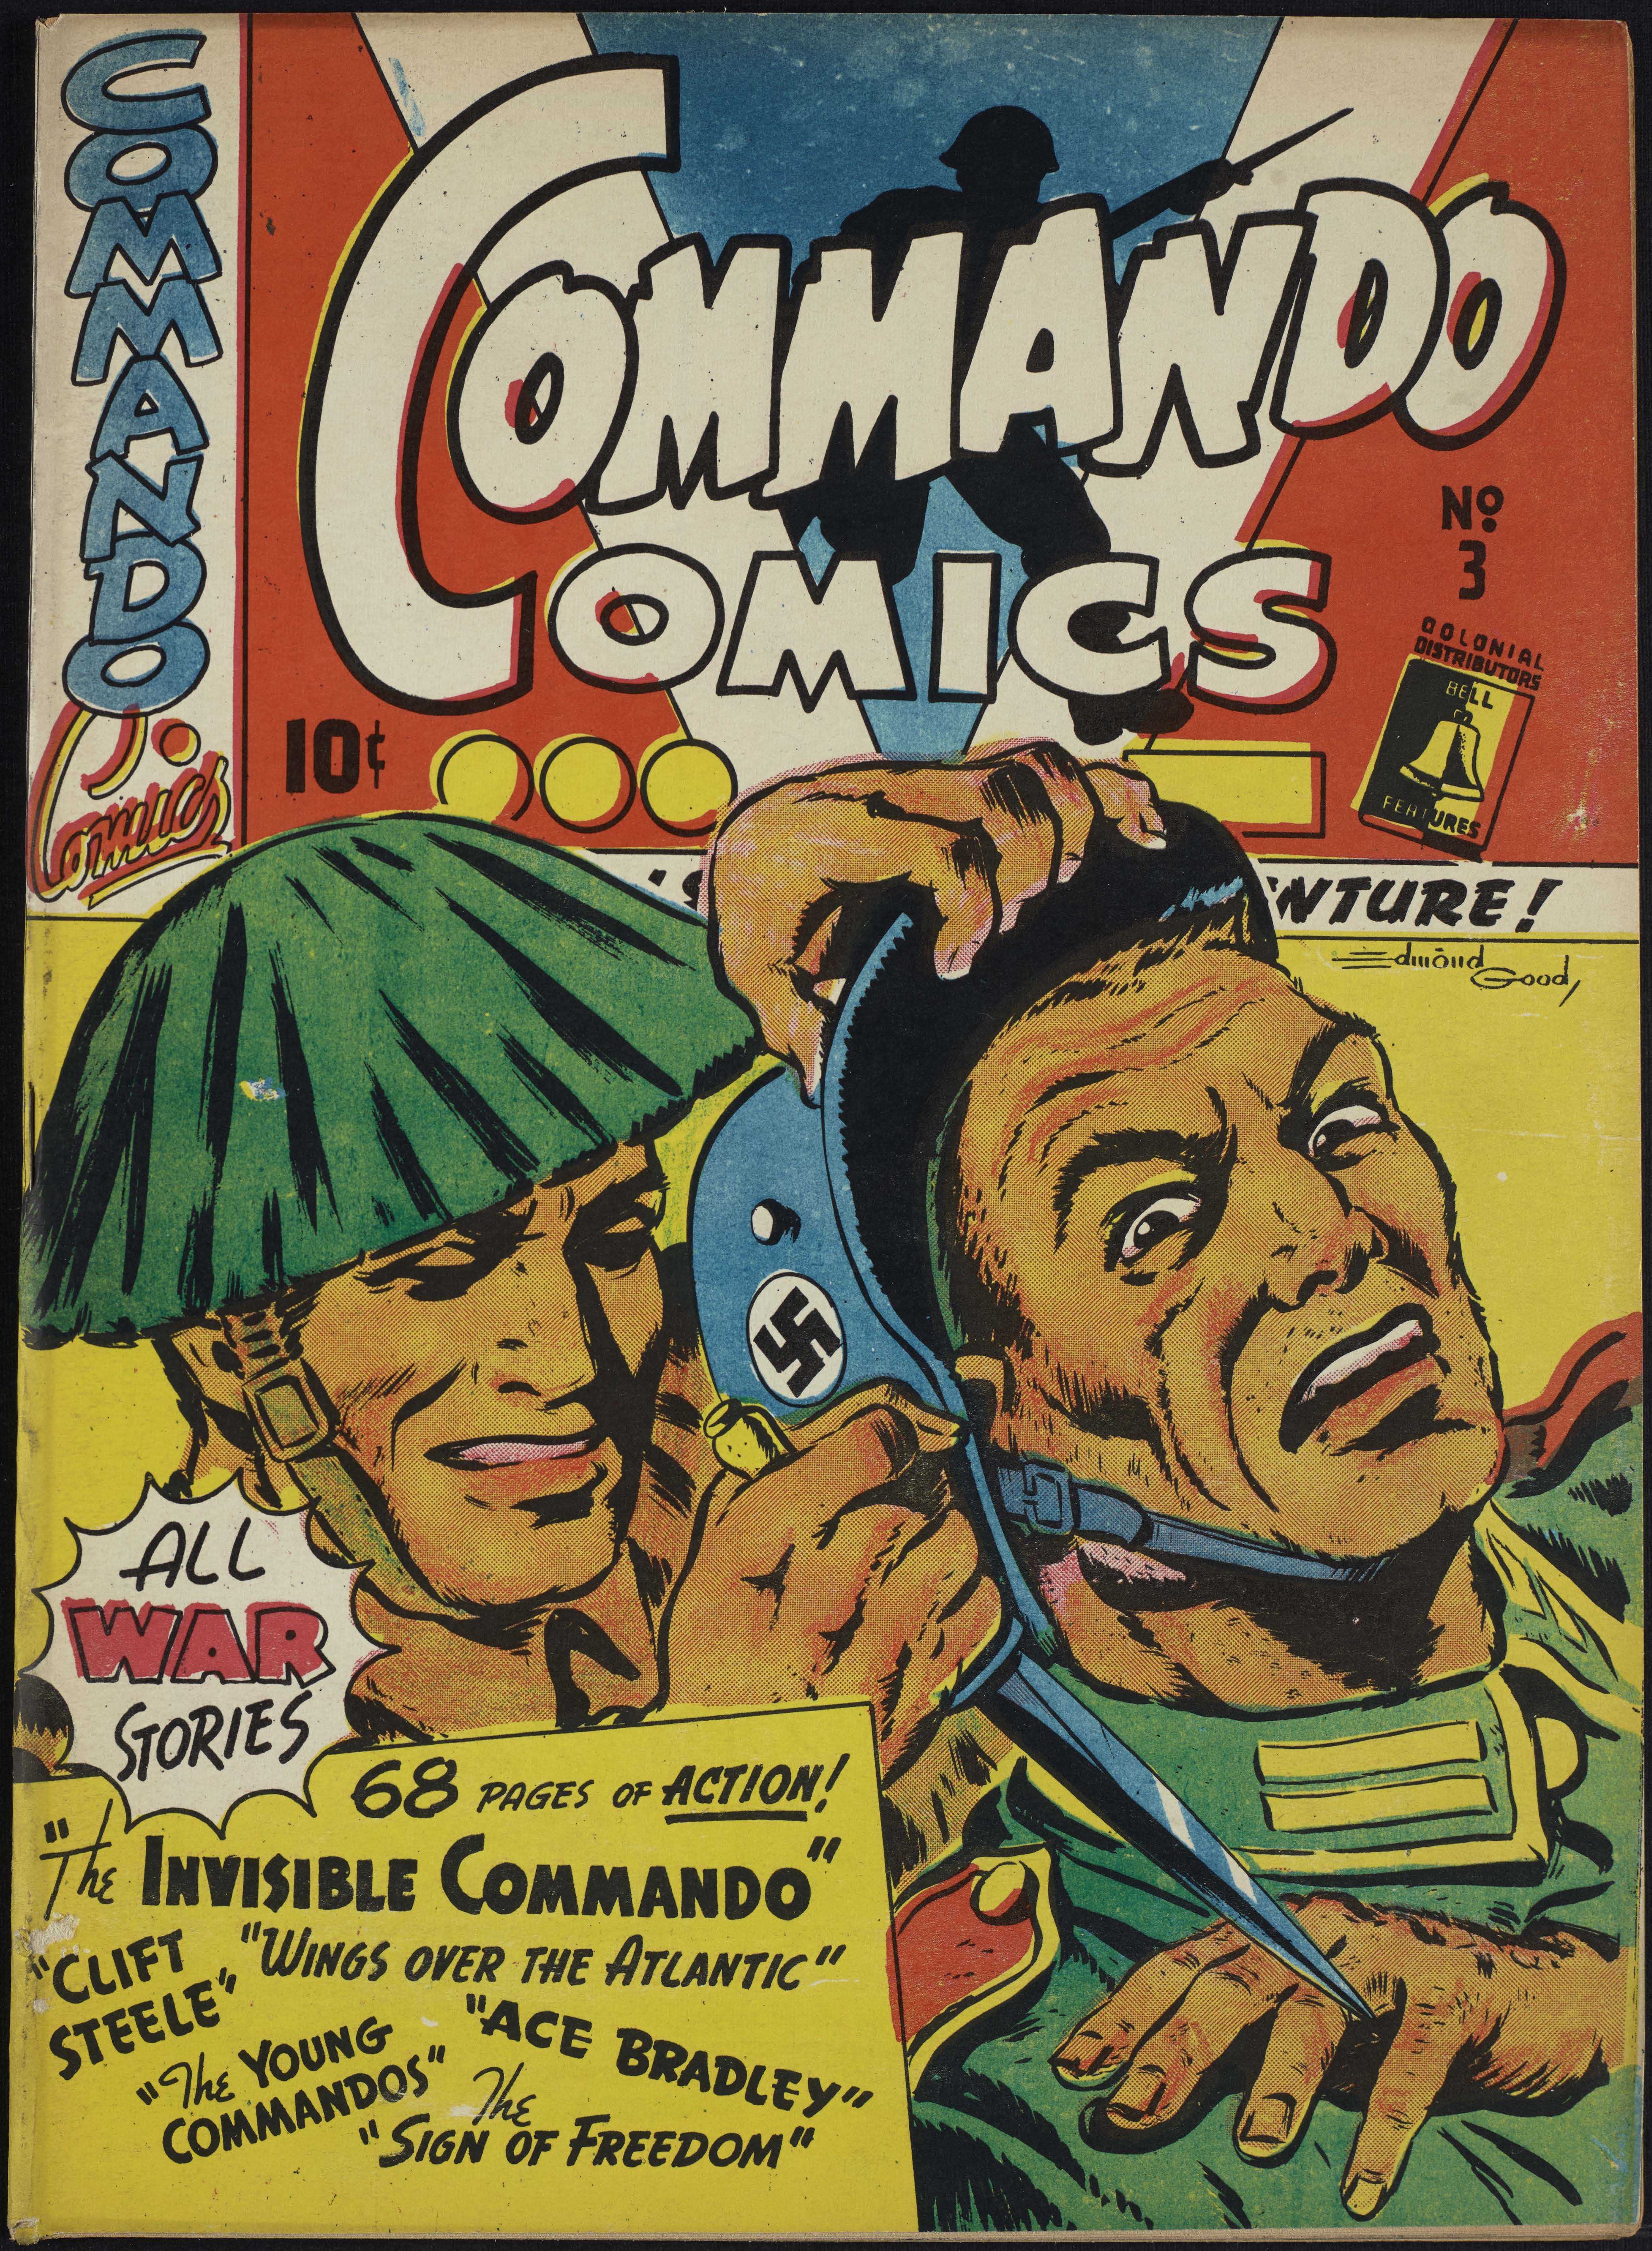 Commando Comics no 3